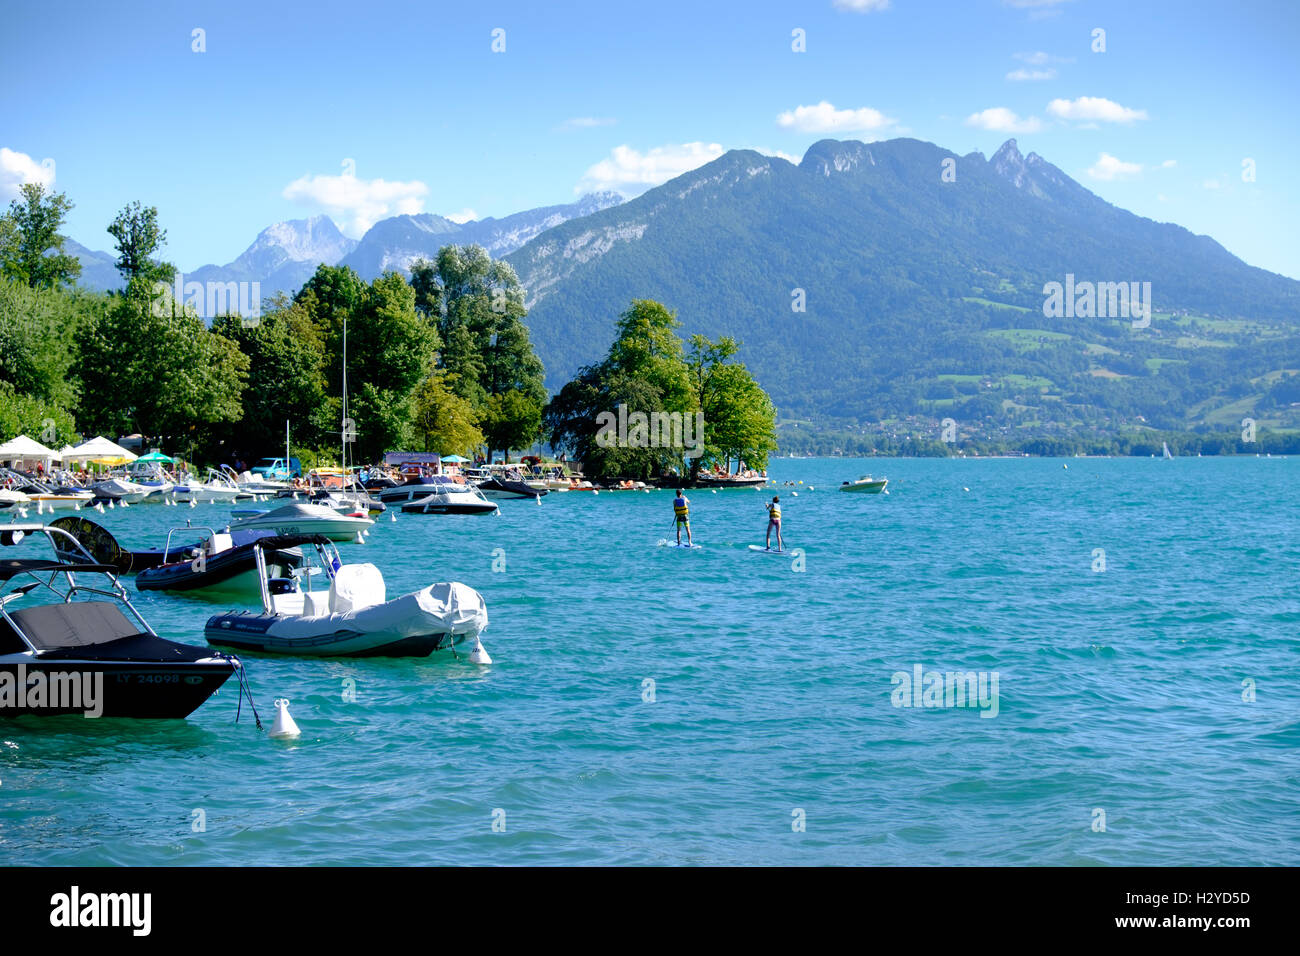 Veyrier du Lac, Haute-Savoie department, Rhone-Alpes region, France Stock Photo